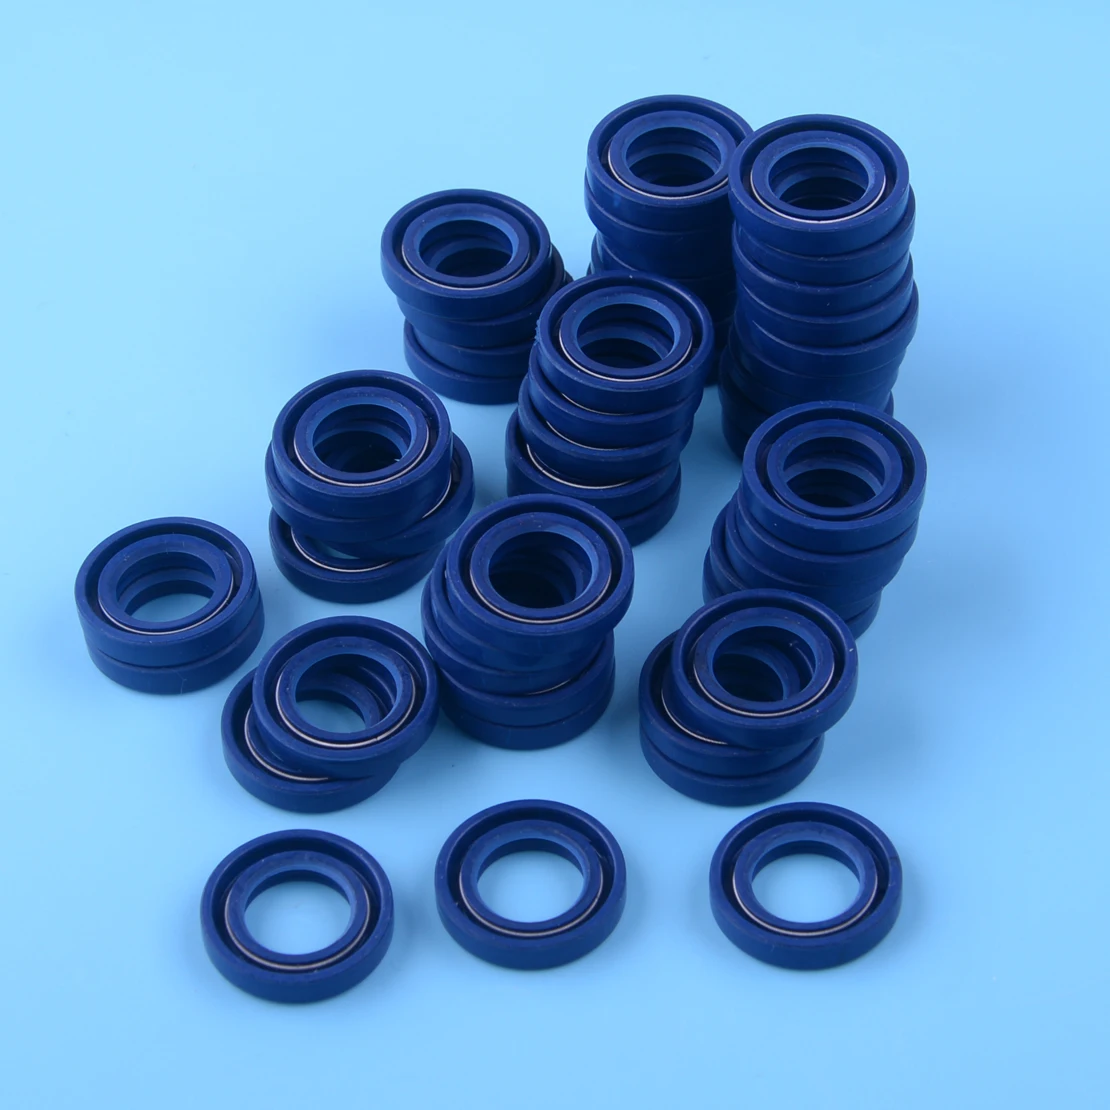 

LETAOSK 50pcs Crank Oil Seal Fit For Stihl BR550 BR600 BR700 BR350 BR430 BR450 SR430 SR450 Blowers 96380031581 96390031585